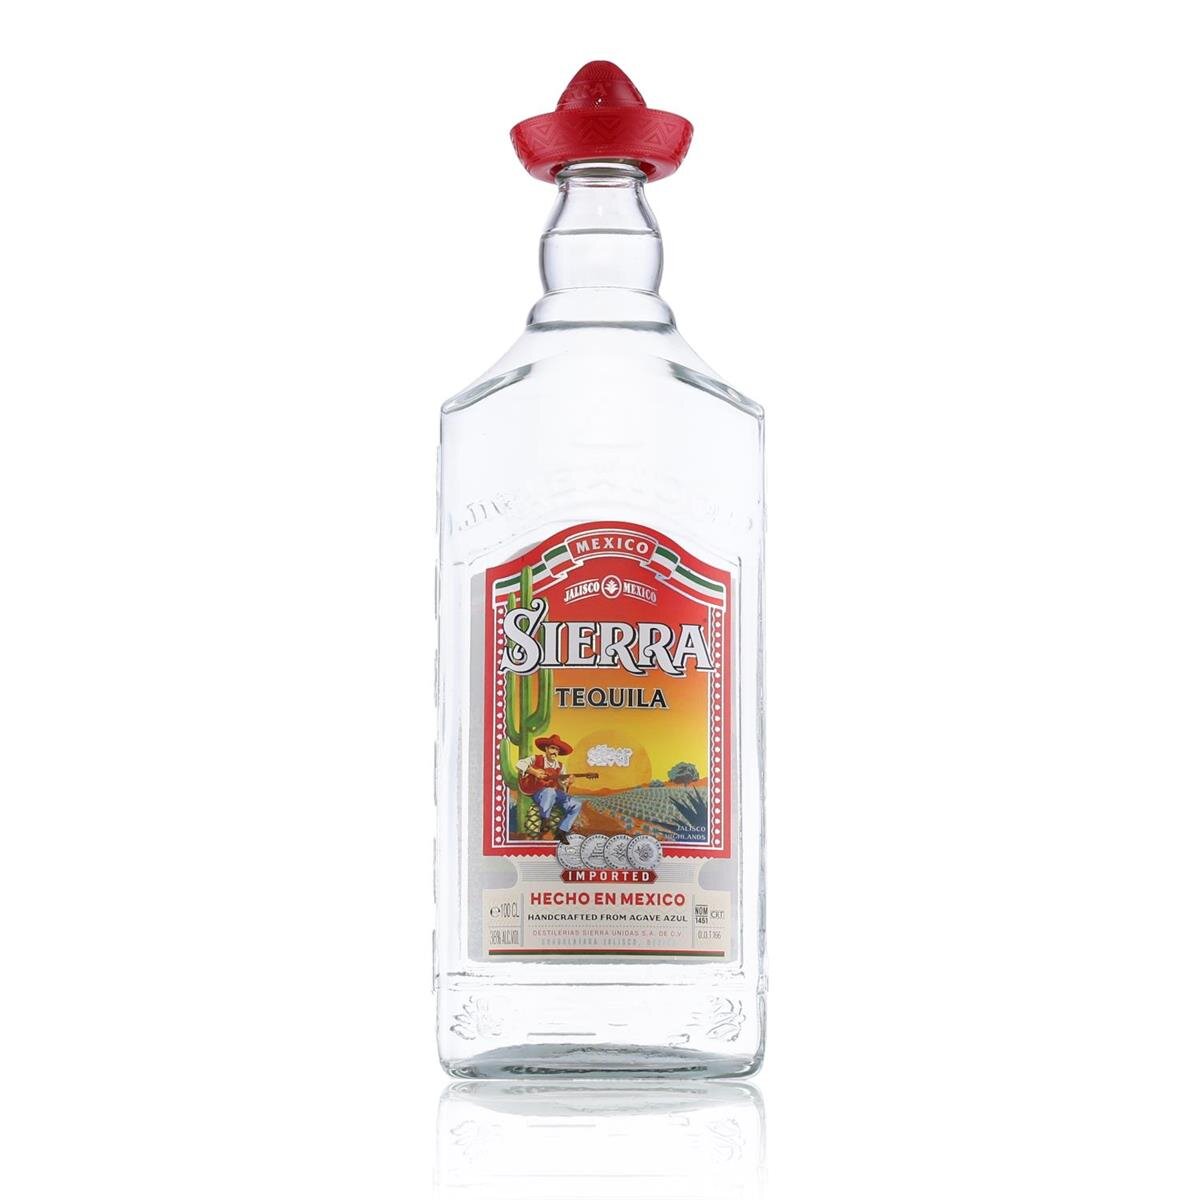 Sierra Tequila Vol. 38% € 1l, 17,49 Silver